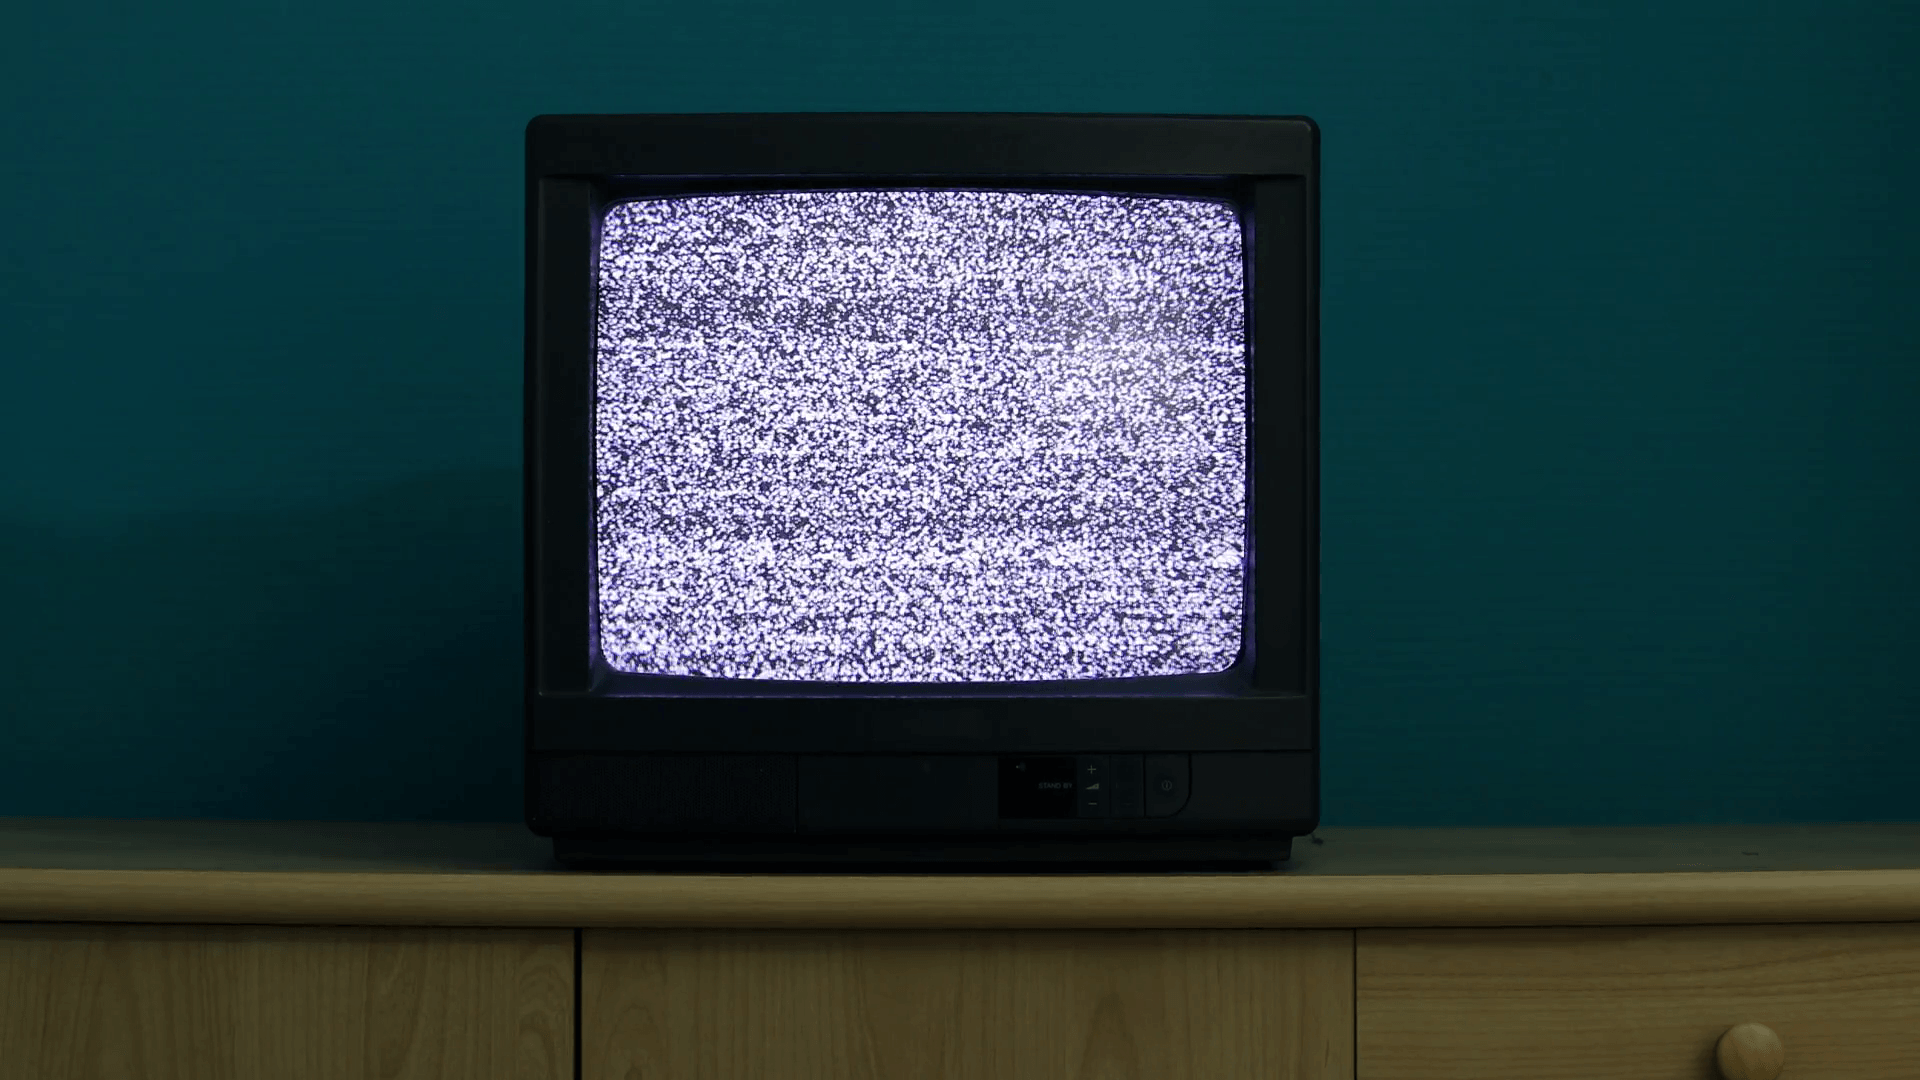 Время включения телевизора. Старый телевизор. Старый телевизор с помехами. Помехи на телевизоре. Экран старого телевизора.